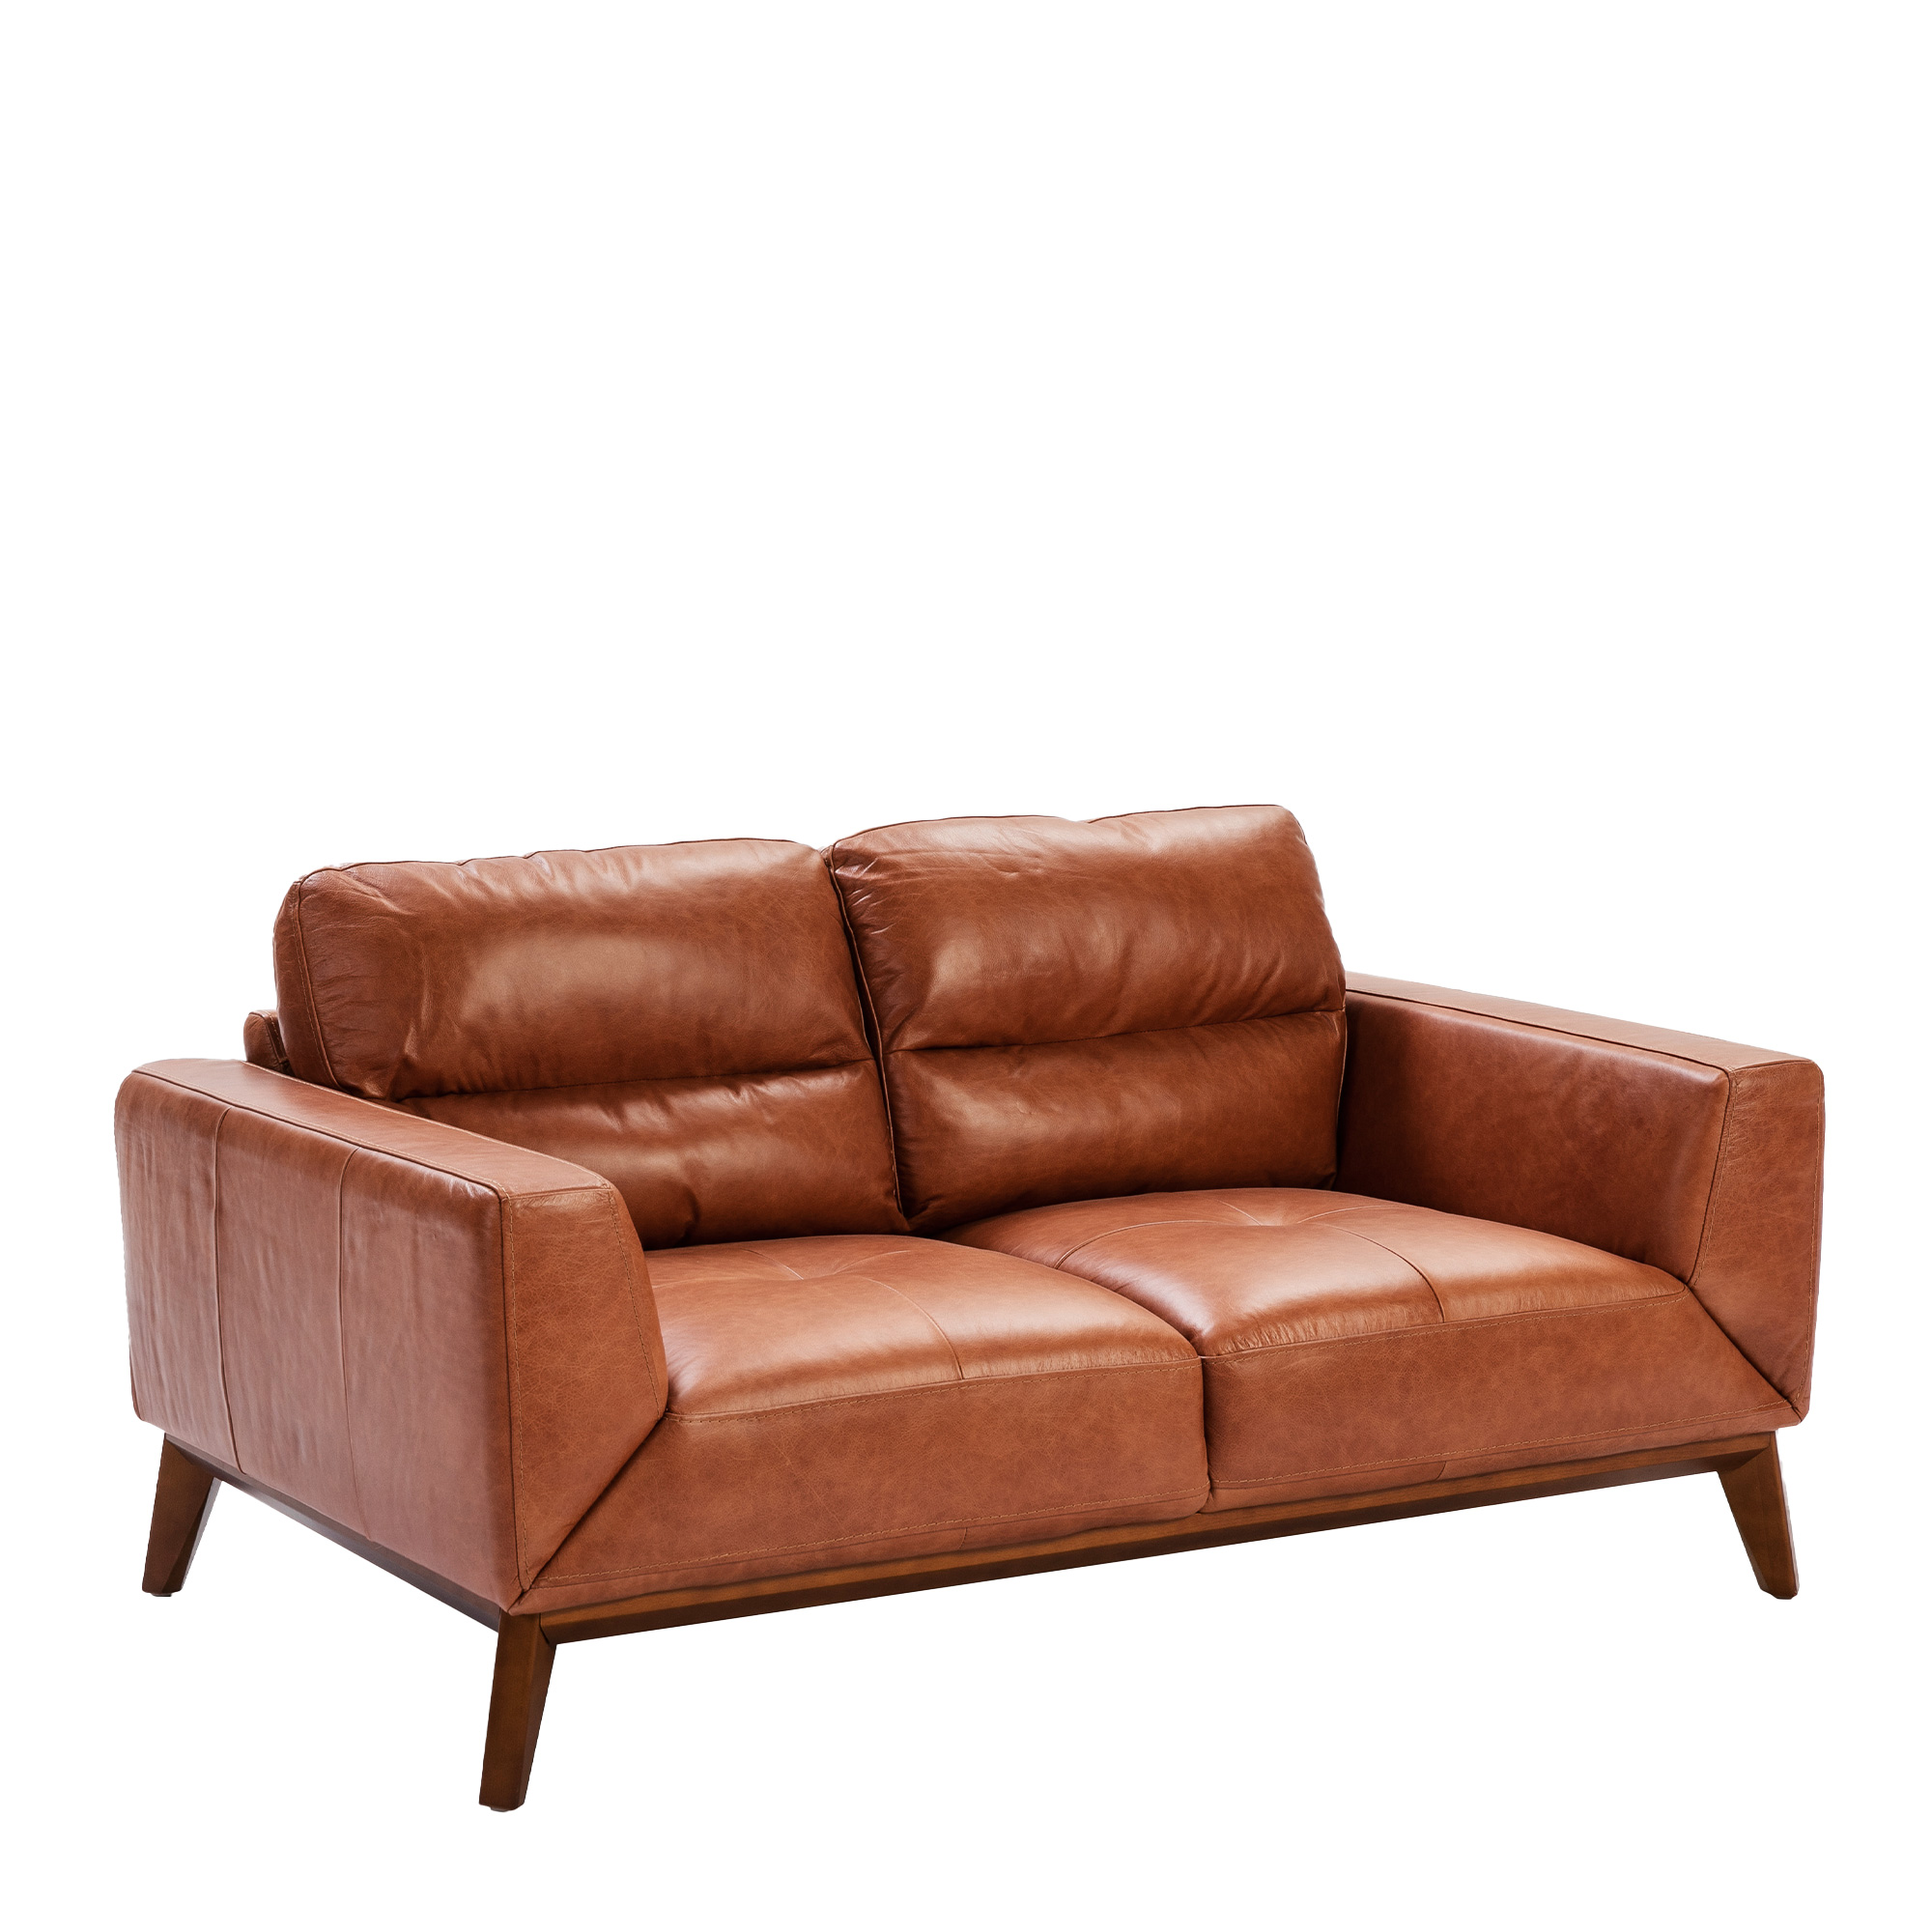 2-Sitzer-Sofa mit Lederbezug und Beinen aus Walnussholz